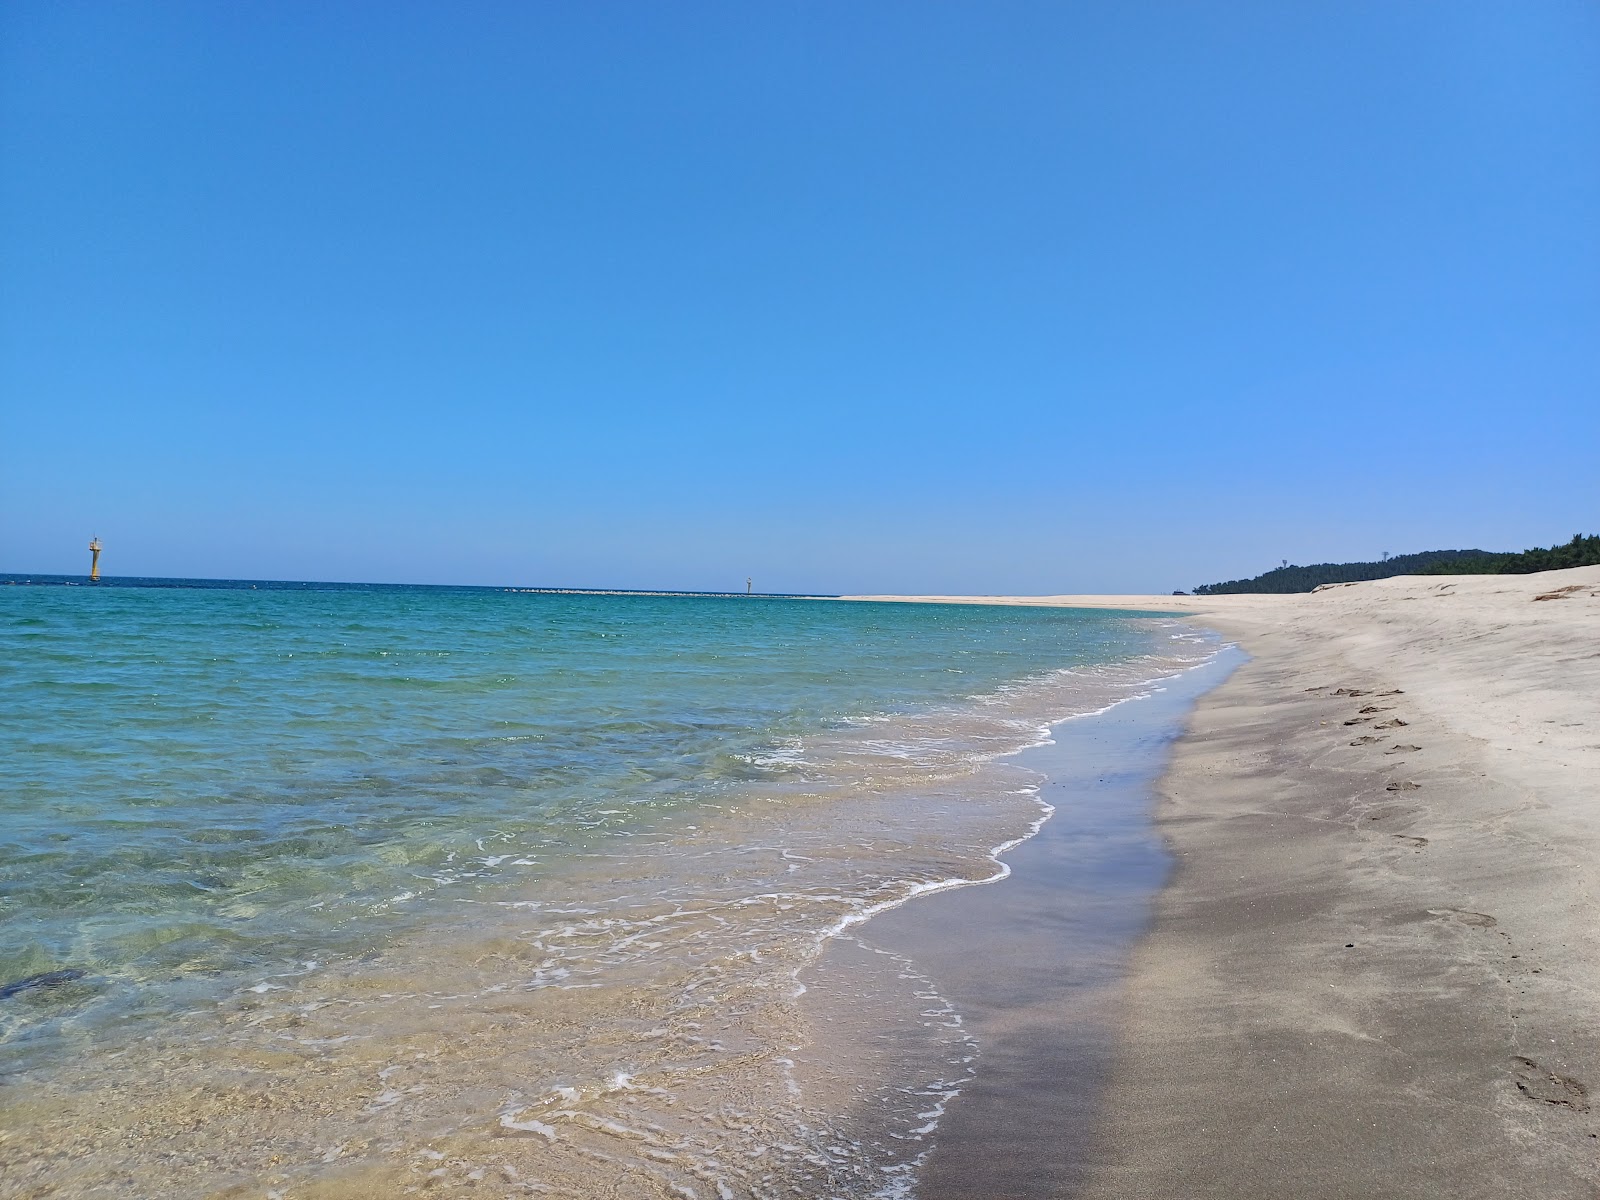 Zdjęcie Gusan Beach - popularne miejsce wśród znawców relaksu